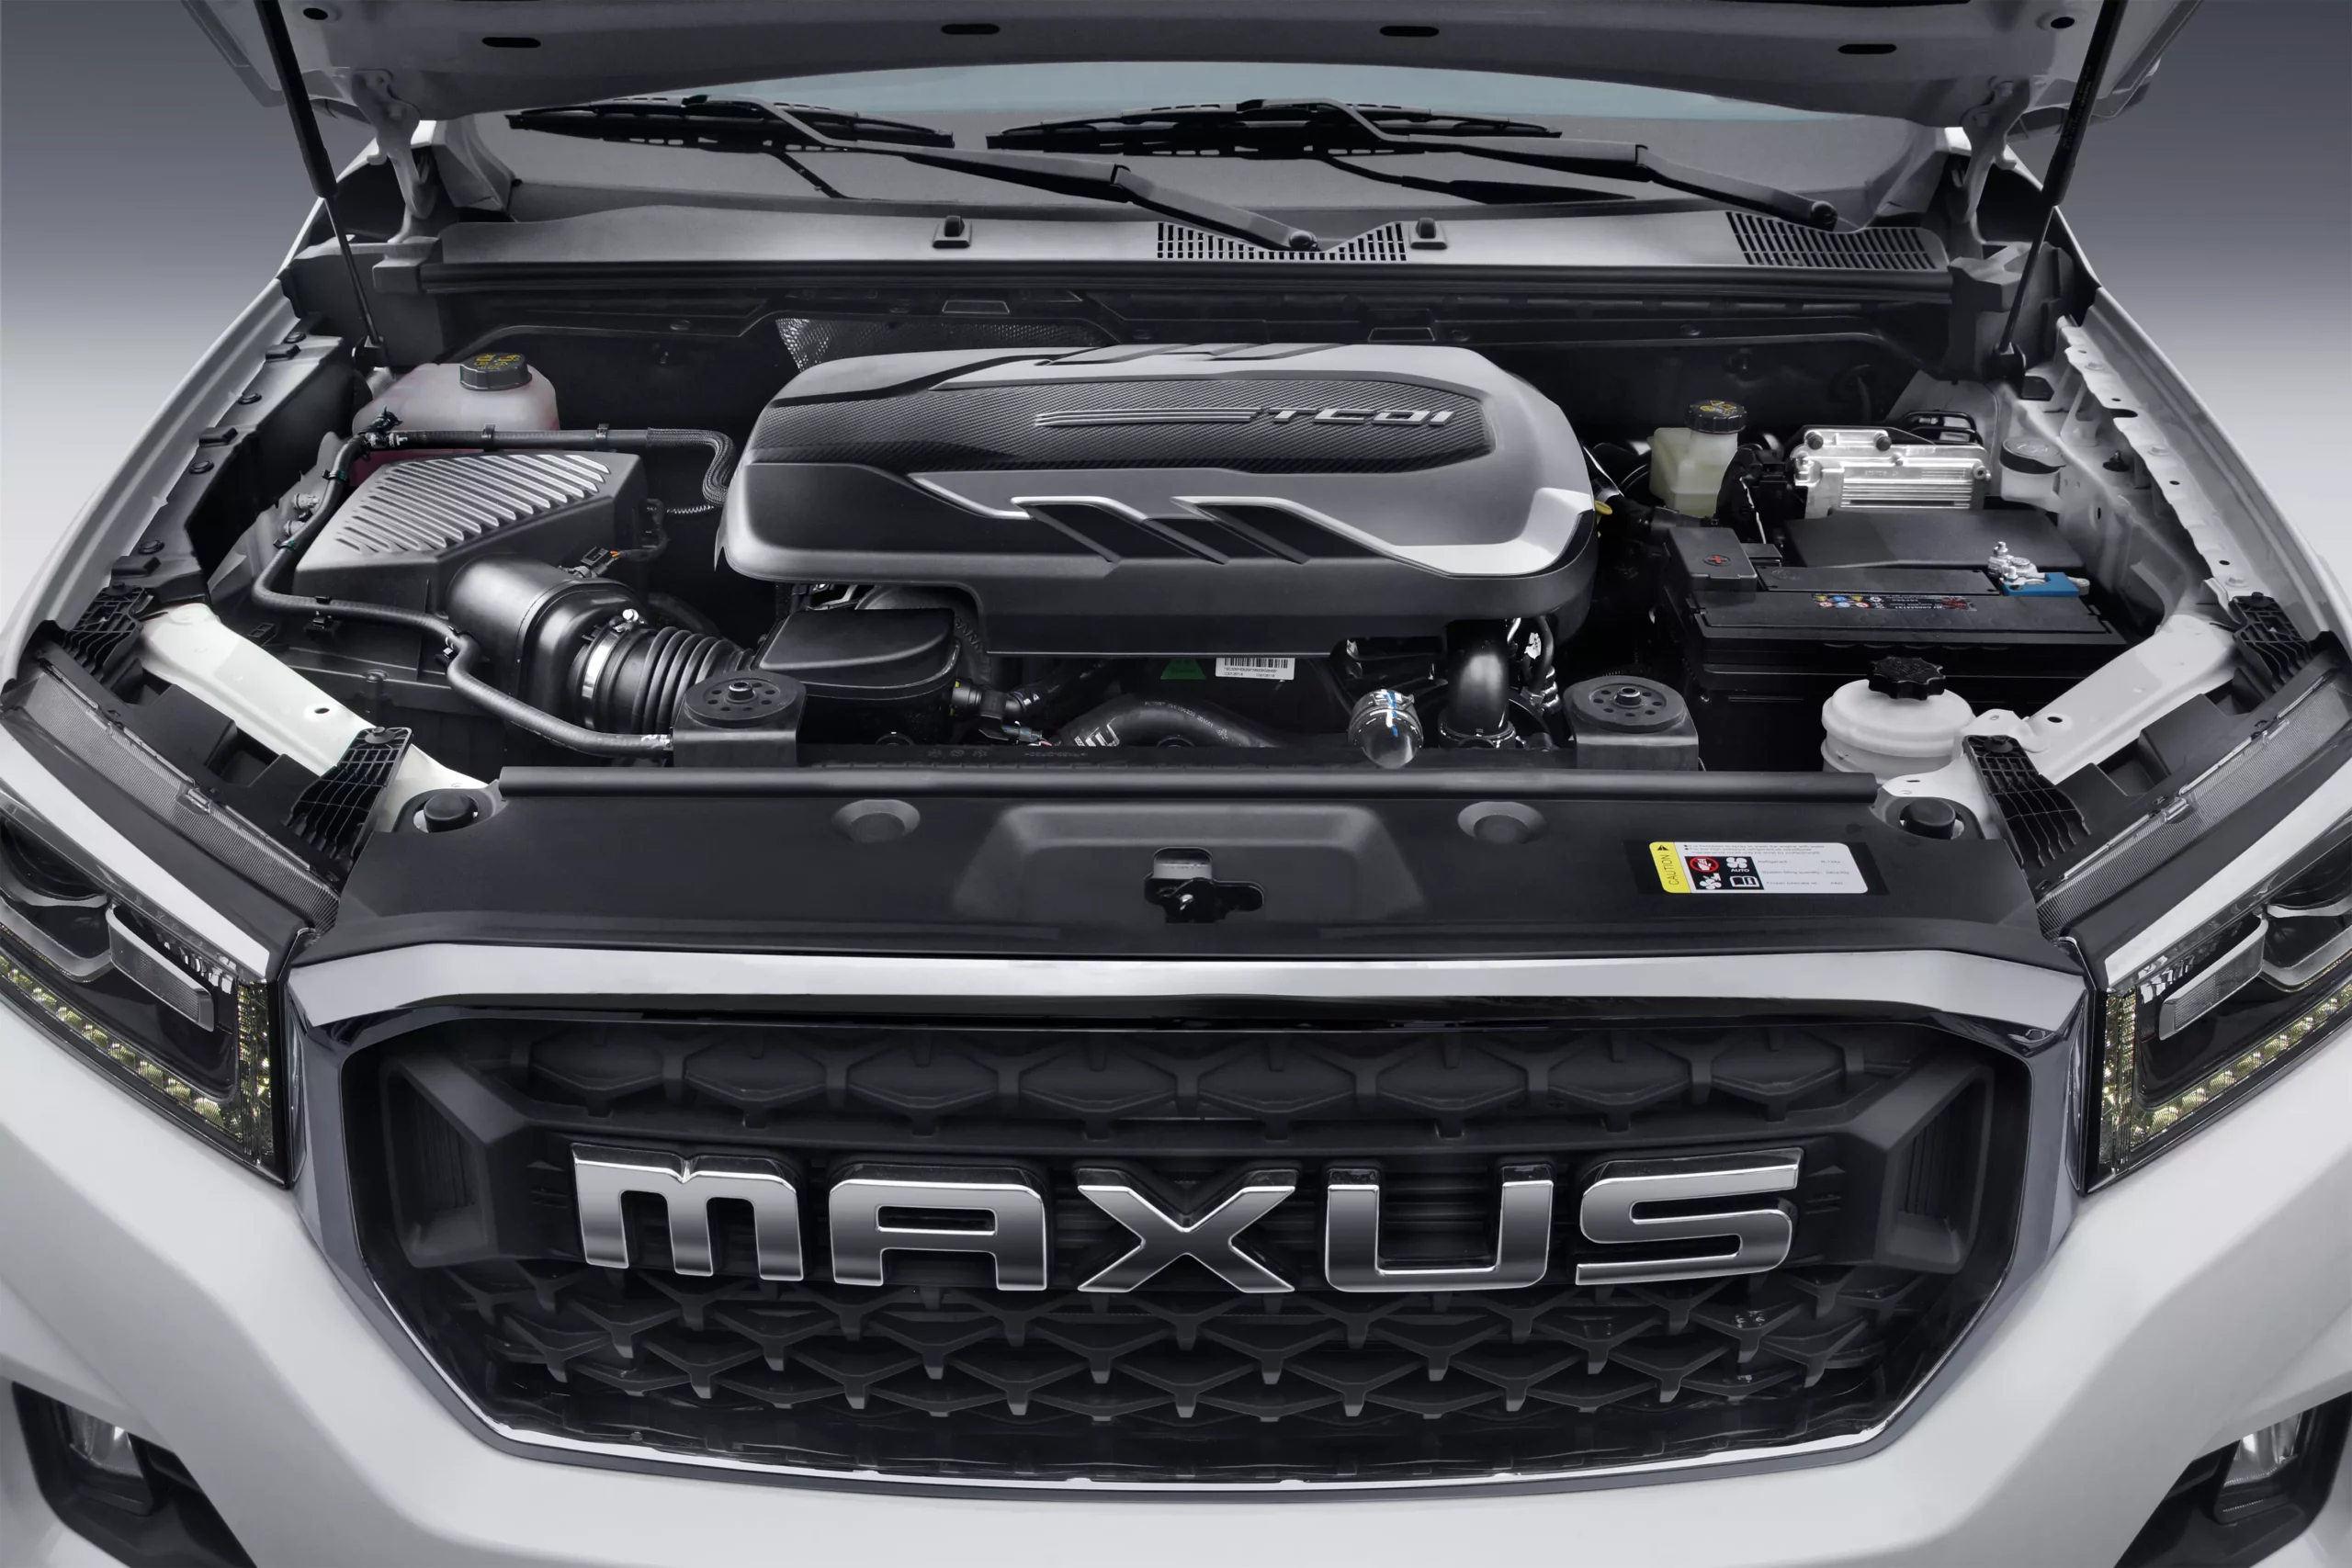 Motor Turbo Diesel 2.0 litros y capacidad de remolque con freno de 3 toneladas. La Maxus T60 D20 está propulsada por un motor Turbo Diesel con inyección directa de 2.0 Litros que entrega 163 HP y un par máximo de 375 Nm. Lo que le brinda suficiente fuerza para enfrentar las tareas más exigentes. ​